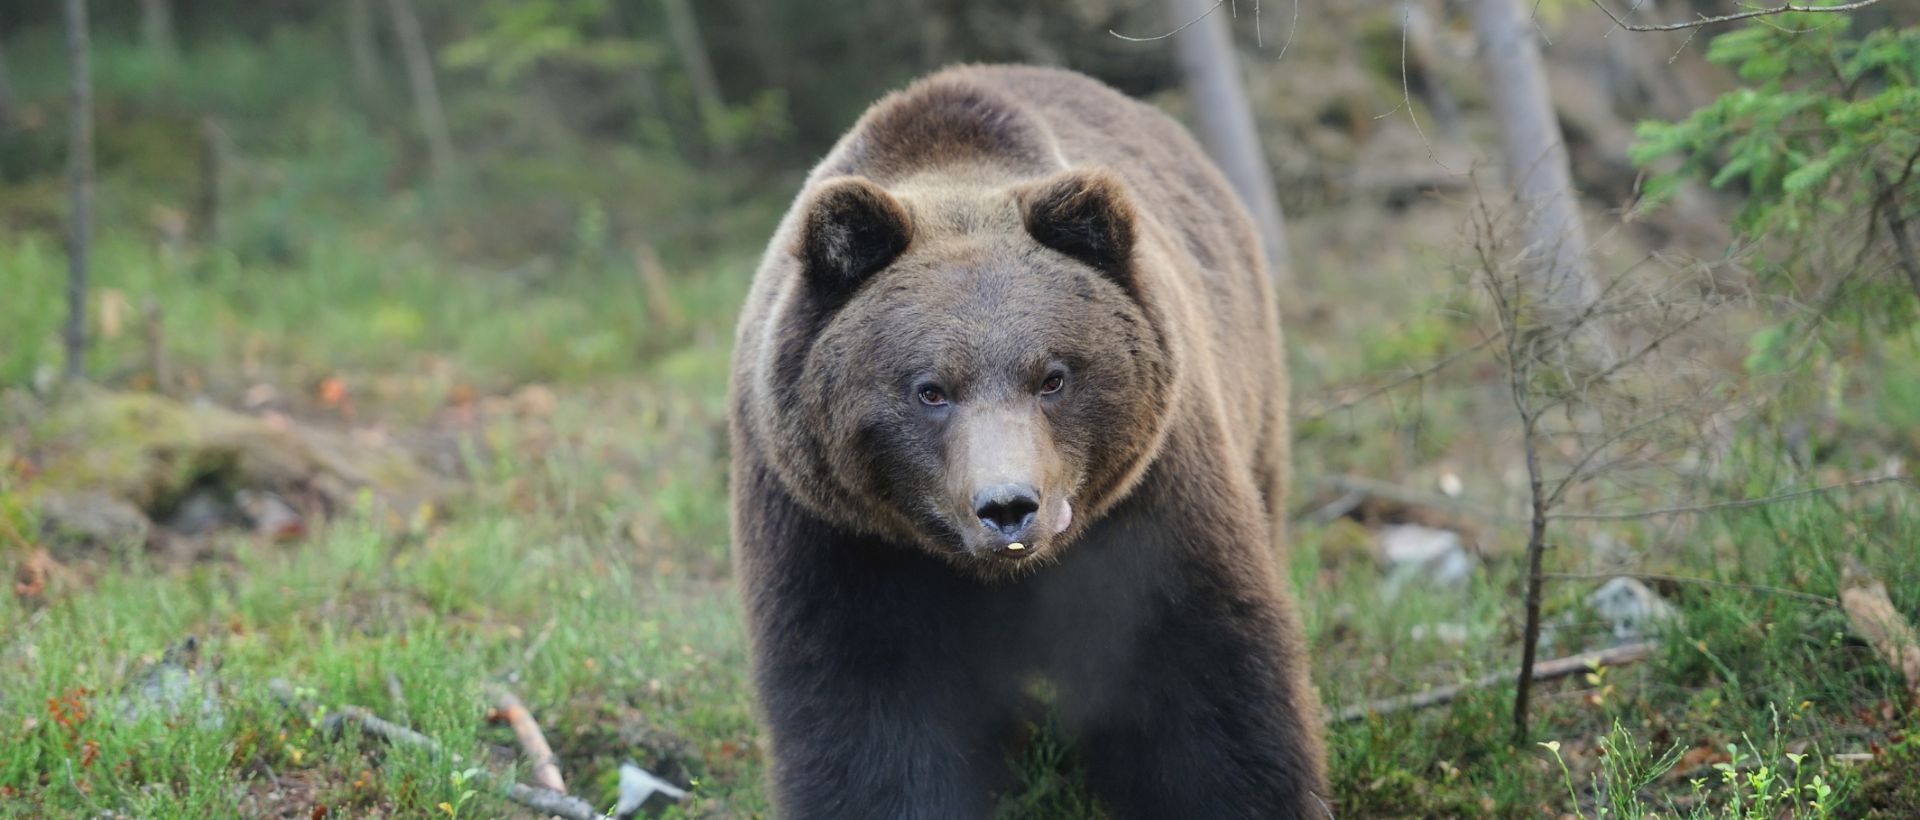 Bilde av en bjørn i skogen